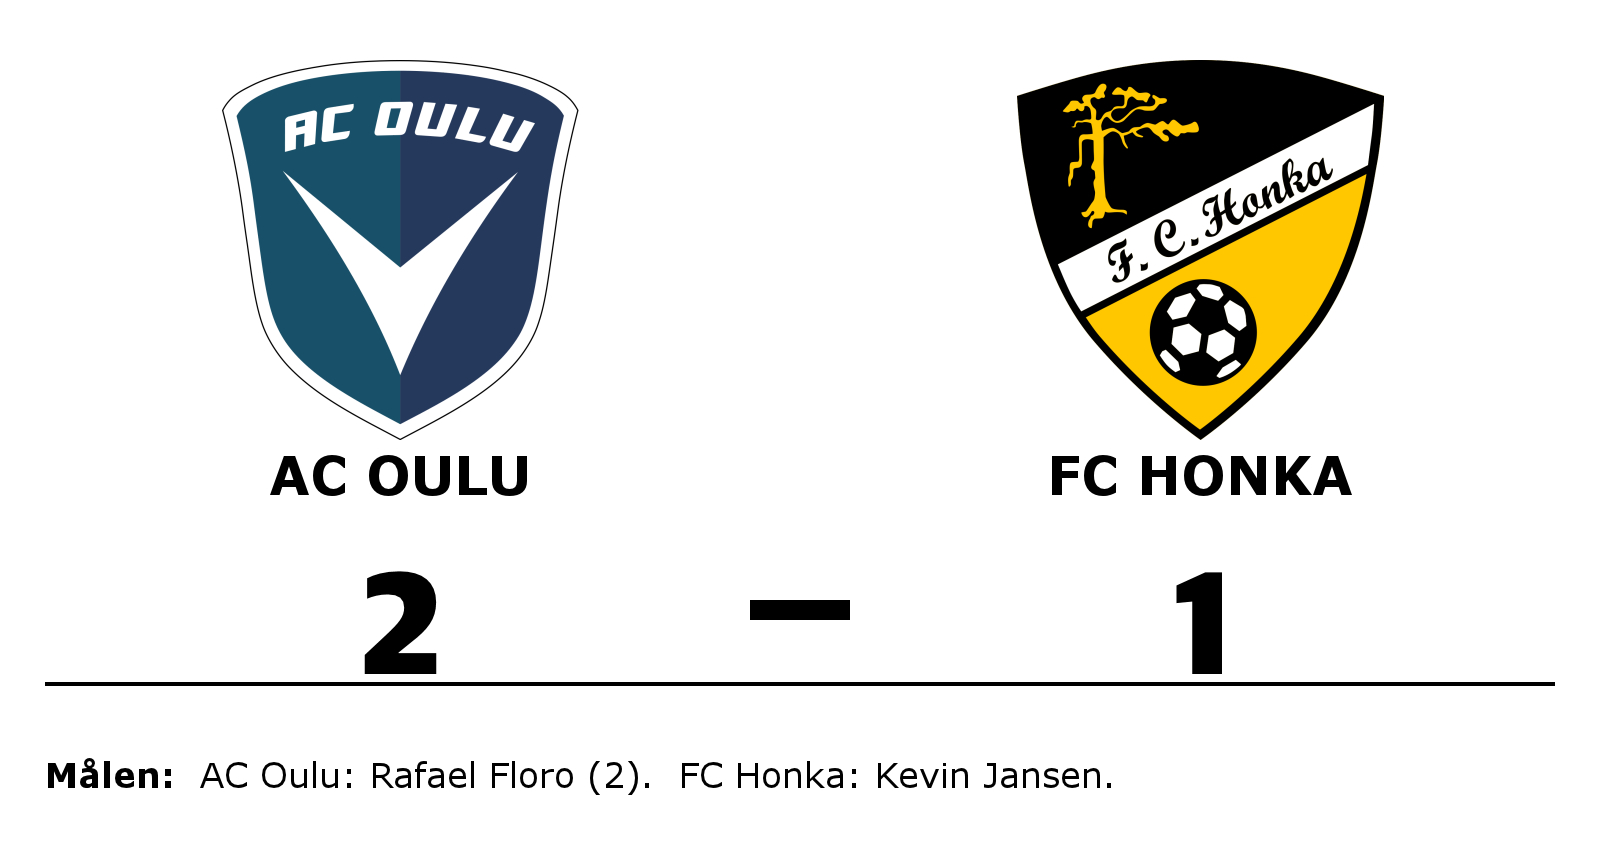 AC Oulu vann mot FC Honka